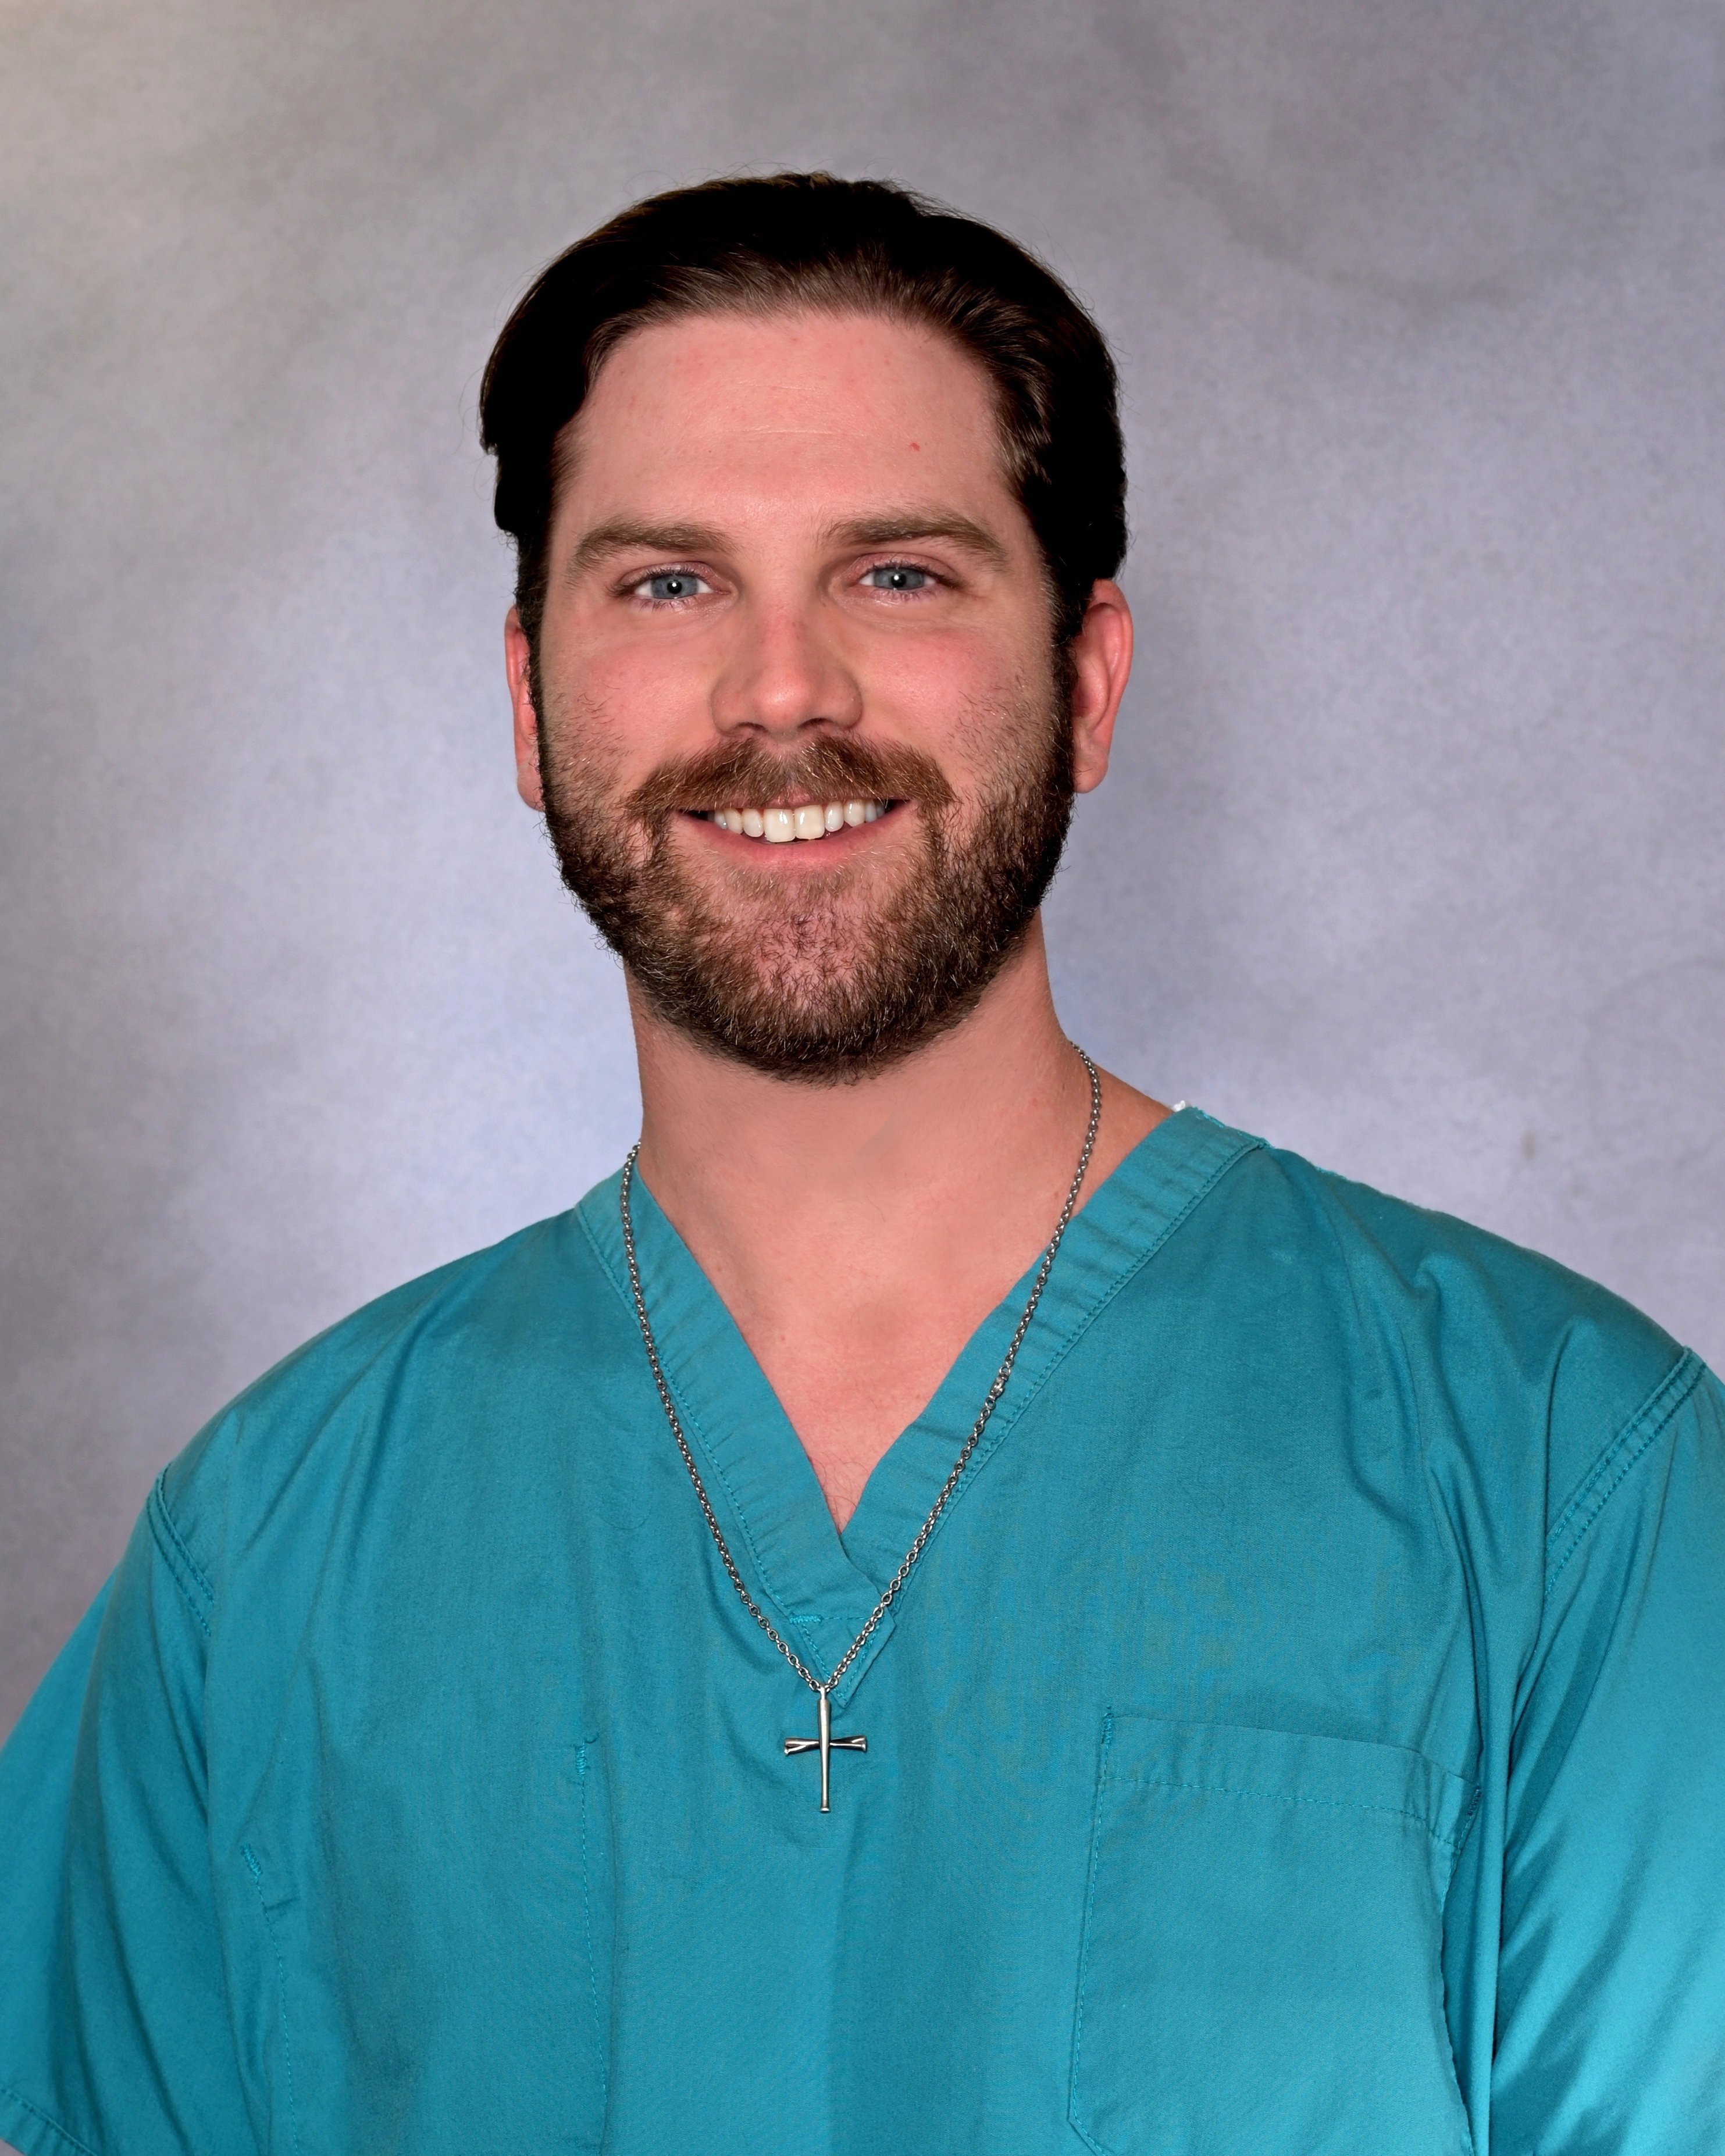 Grant Schiltz Joins Lane Surgery Group